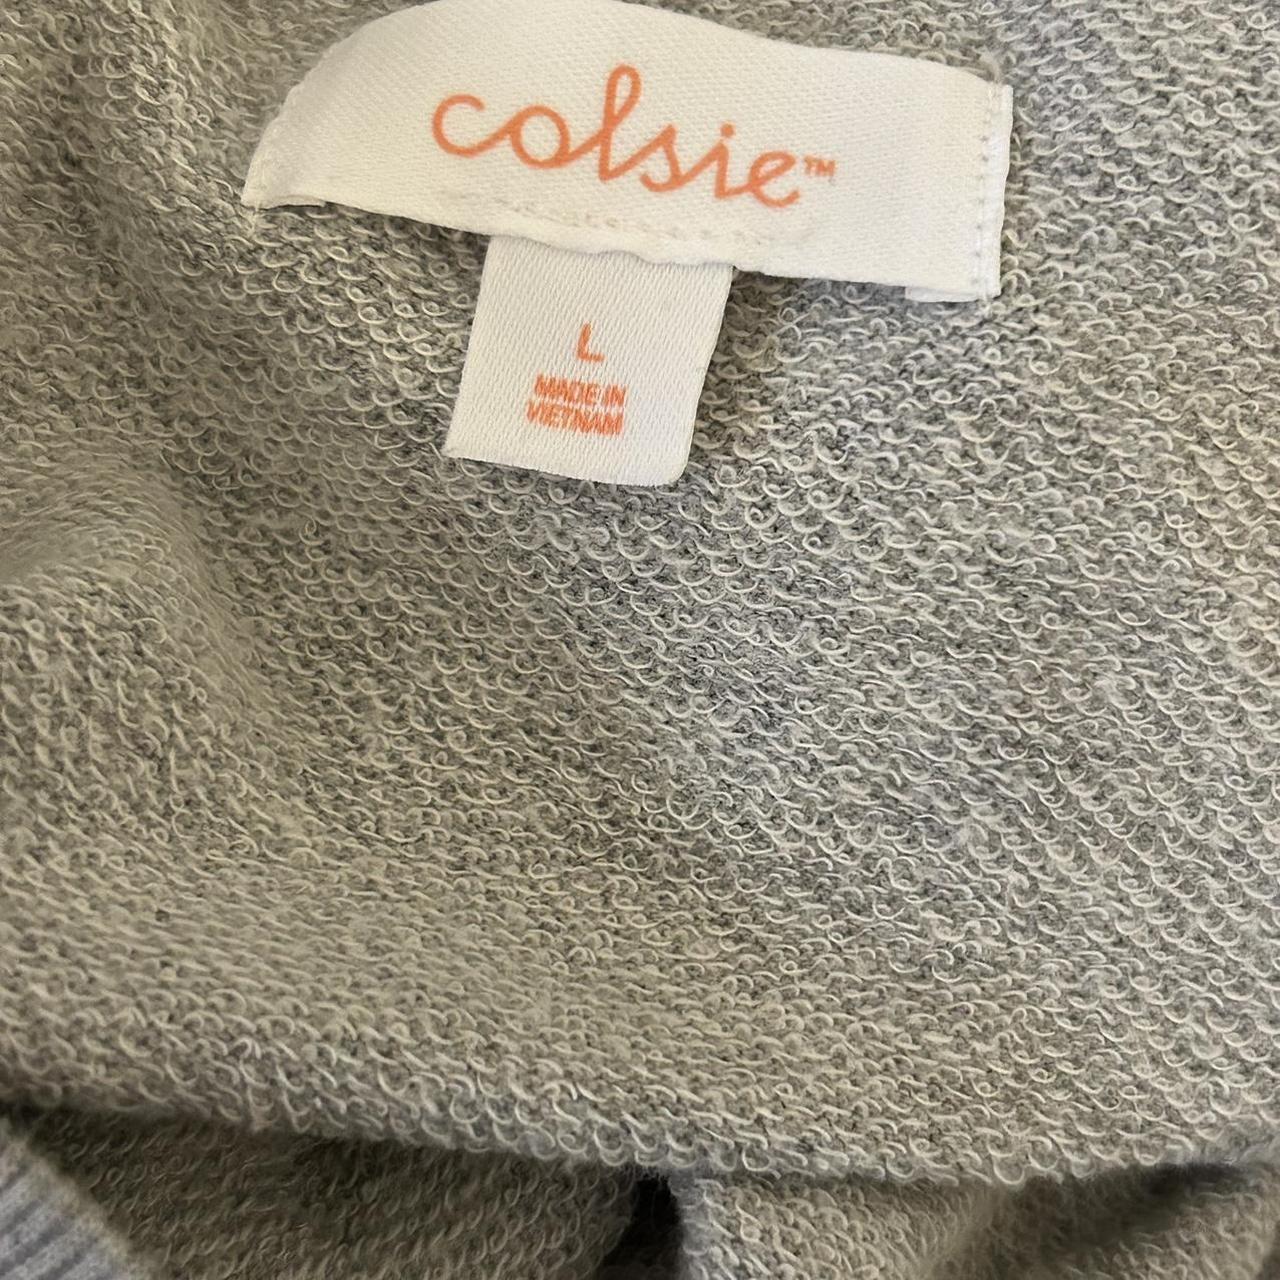 target brand colsie sweatshirt. worn just a few